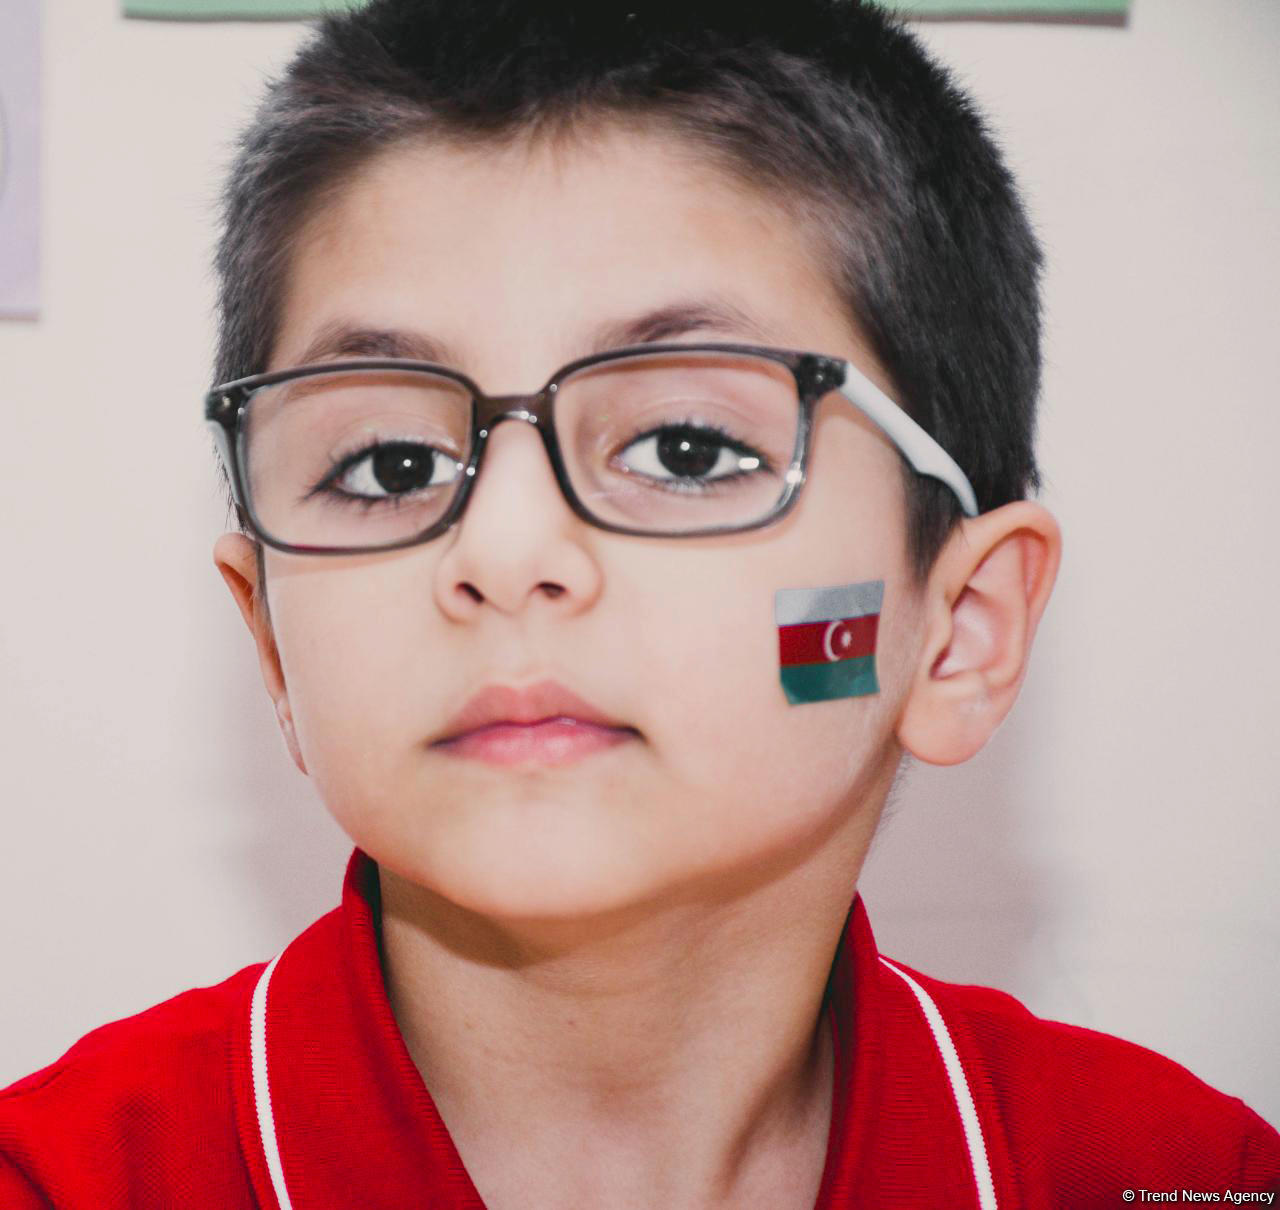 Самые маленькие дети показали свою любовь к флагу Азербайджана